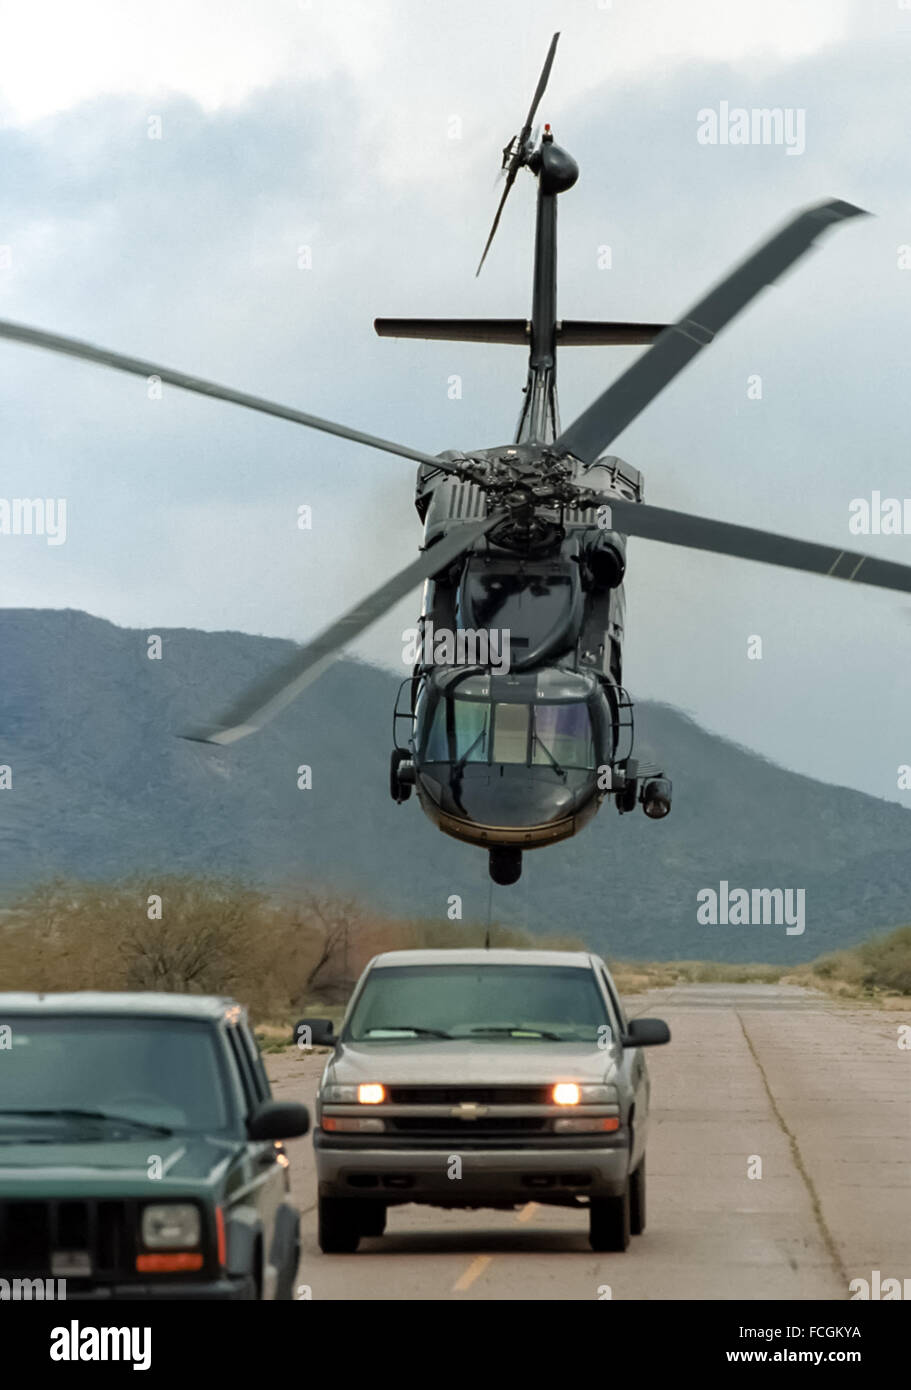 US Customs and Border Protection CBP Ufficio di aria e unità di Marine operando un Sikorsky UH-60 Blackhawk elicottero qui fotografato su esercizio intimidatorio 2 veicoli nel sudovest degli Stati Uniti. Vedere la descrizione per maggiori informazioni. Foto Stock